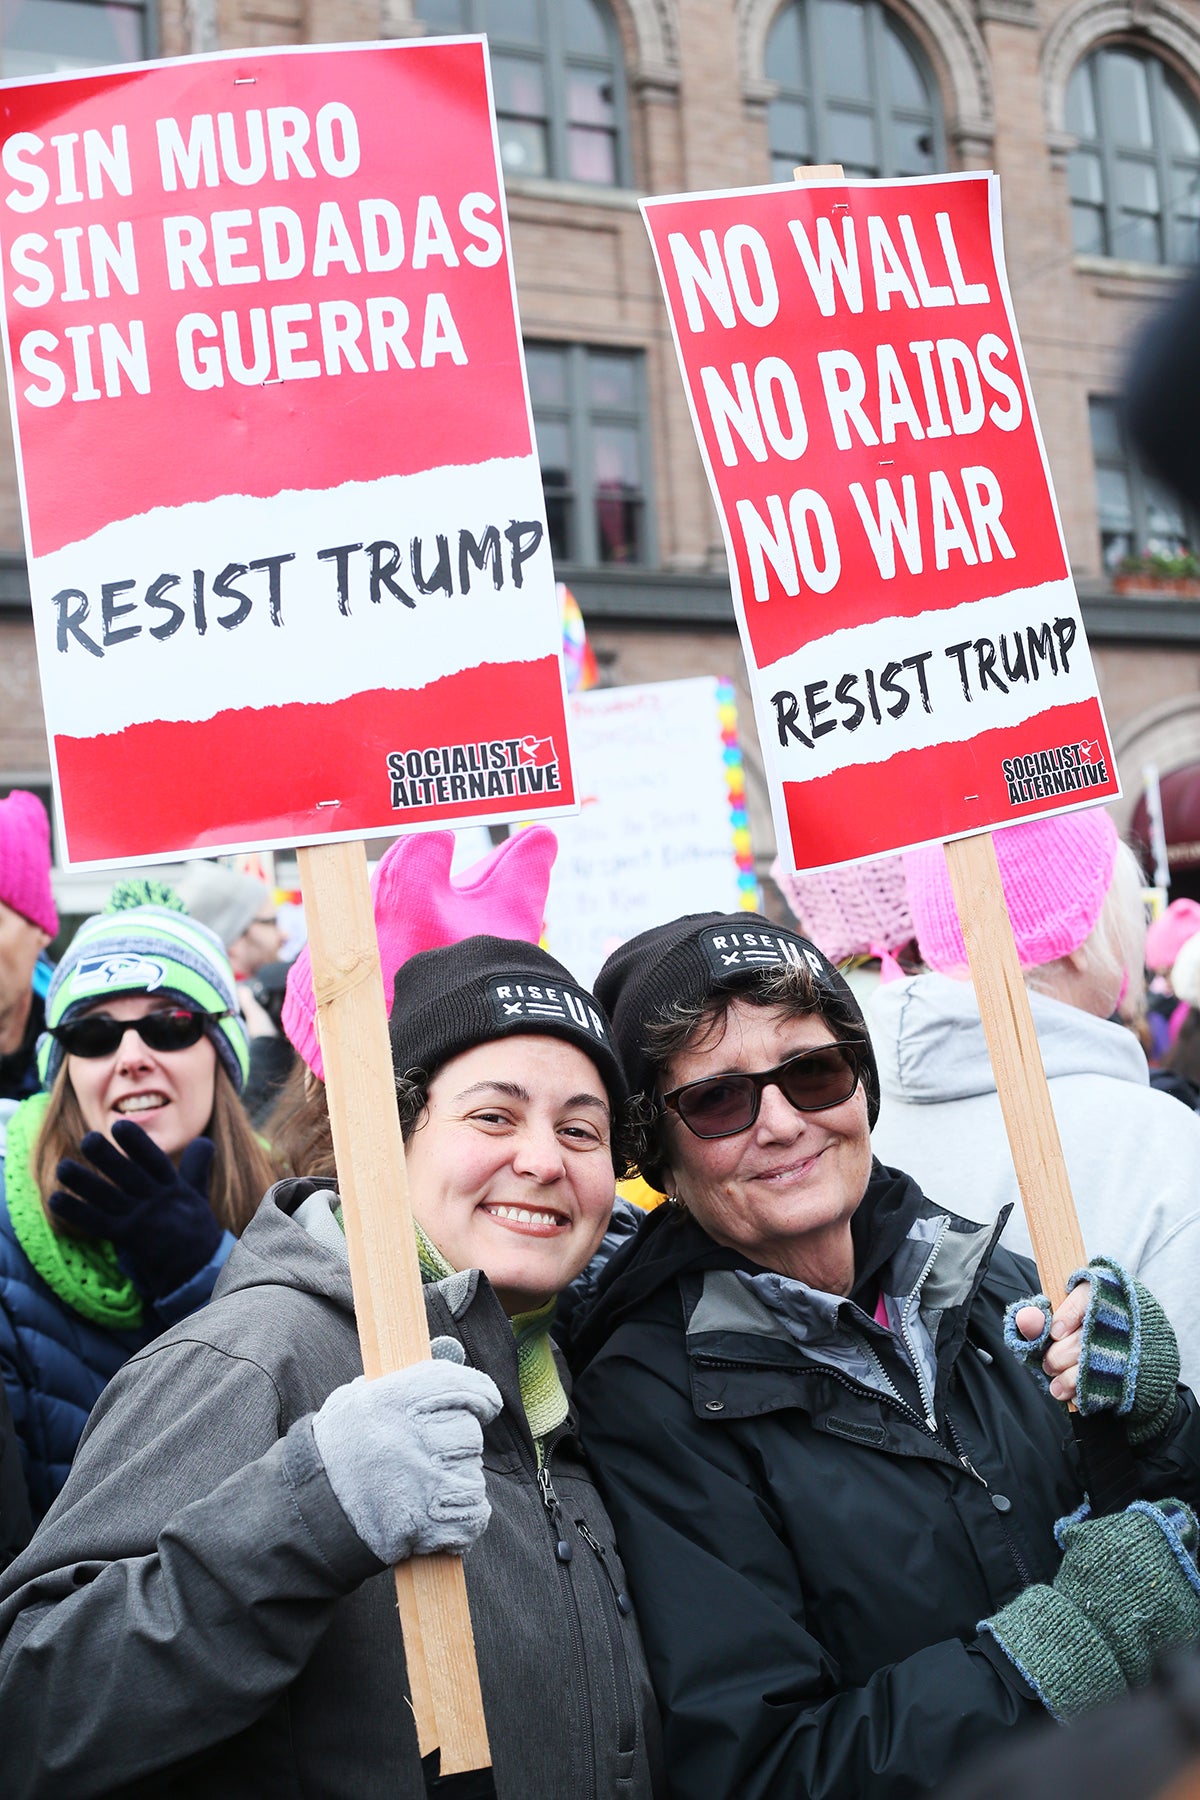 Seattle Women's March 2017 No wall no bans no war